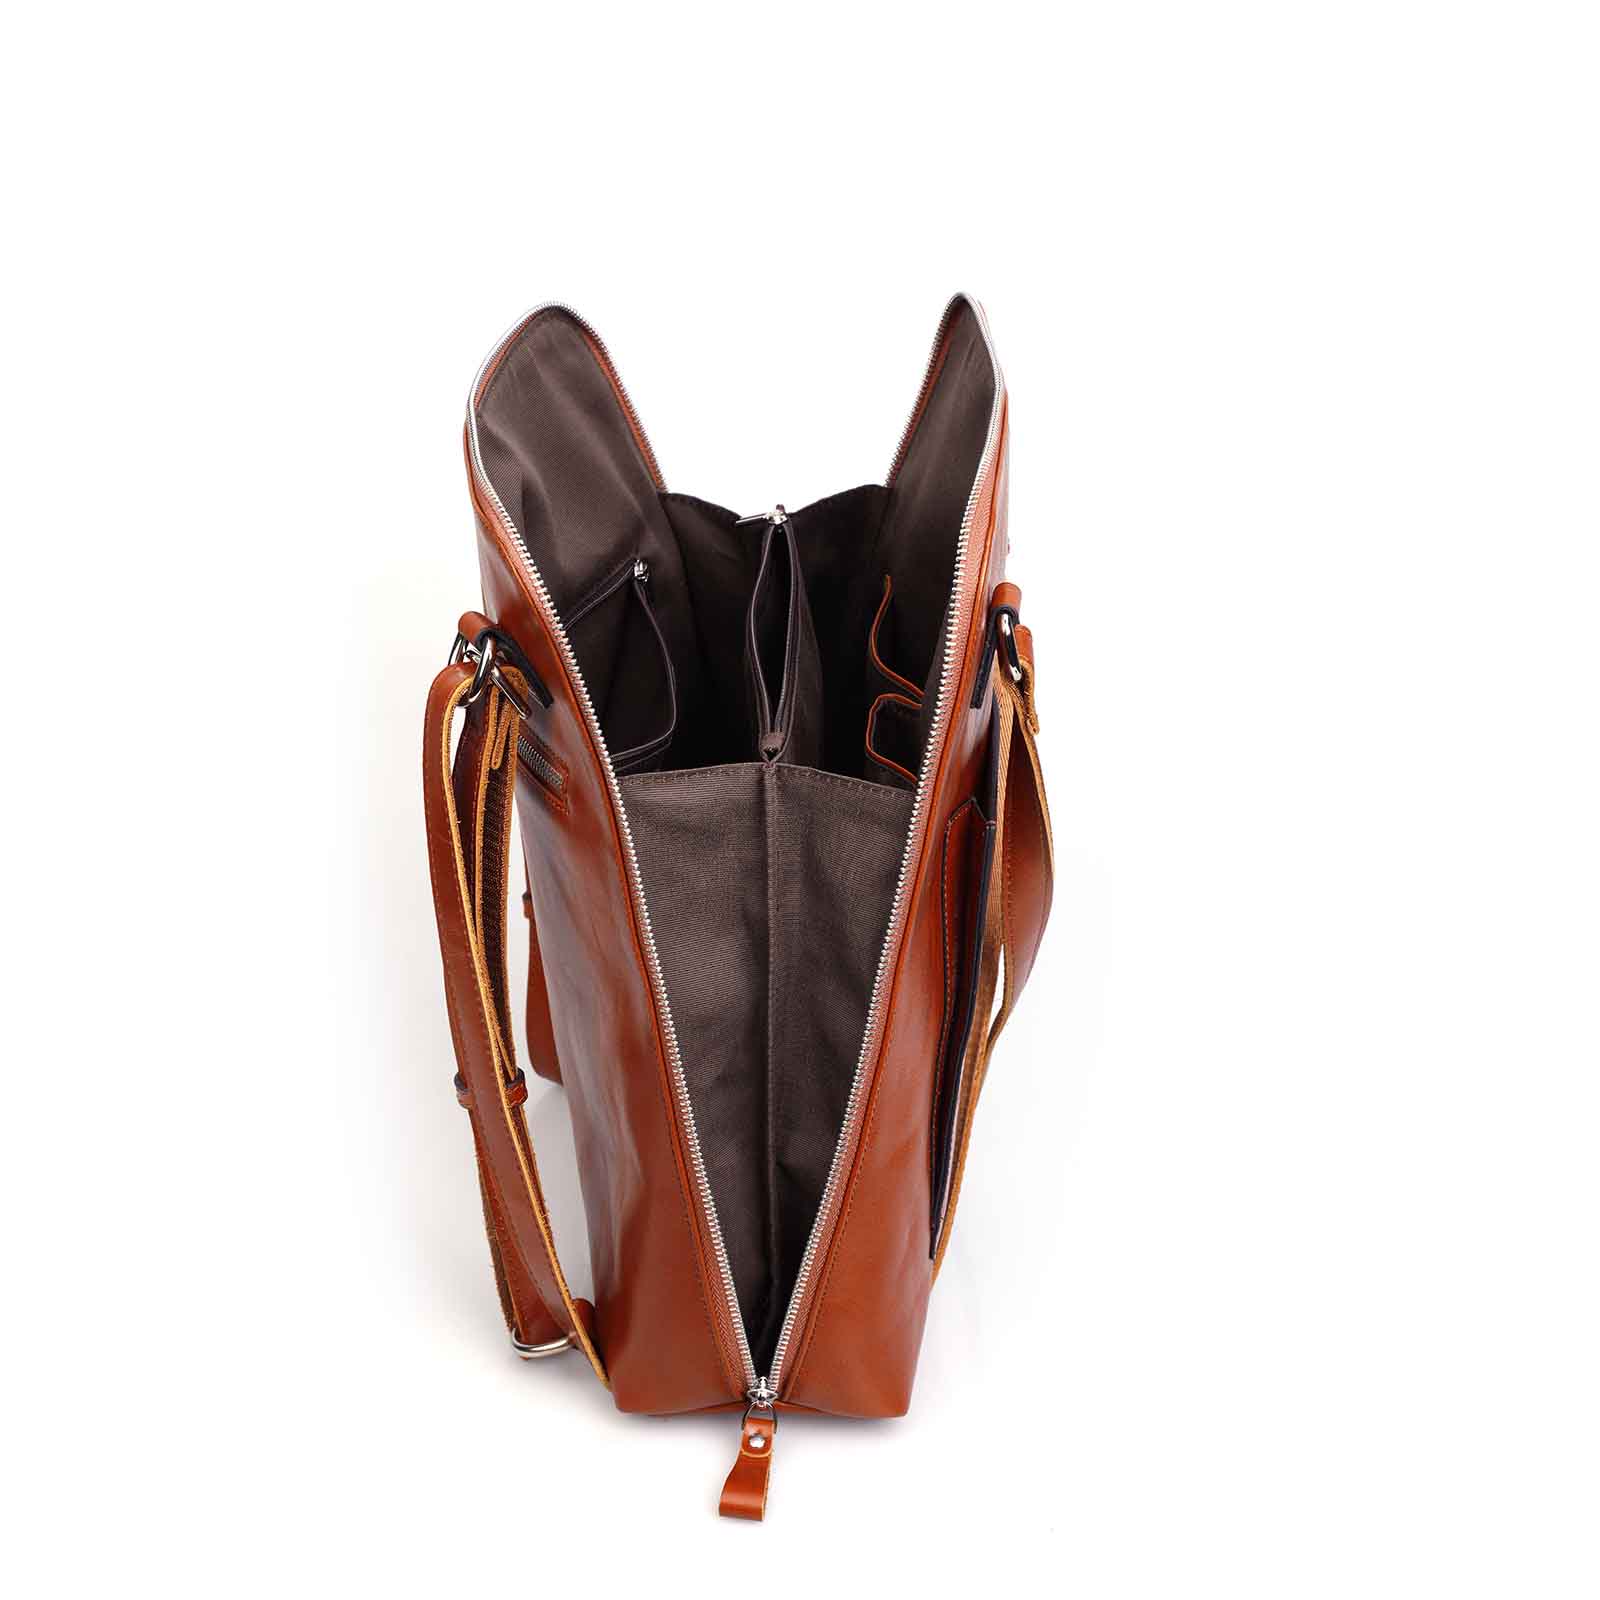 Waterproof Leather School Backpack